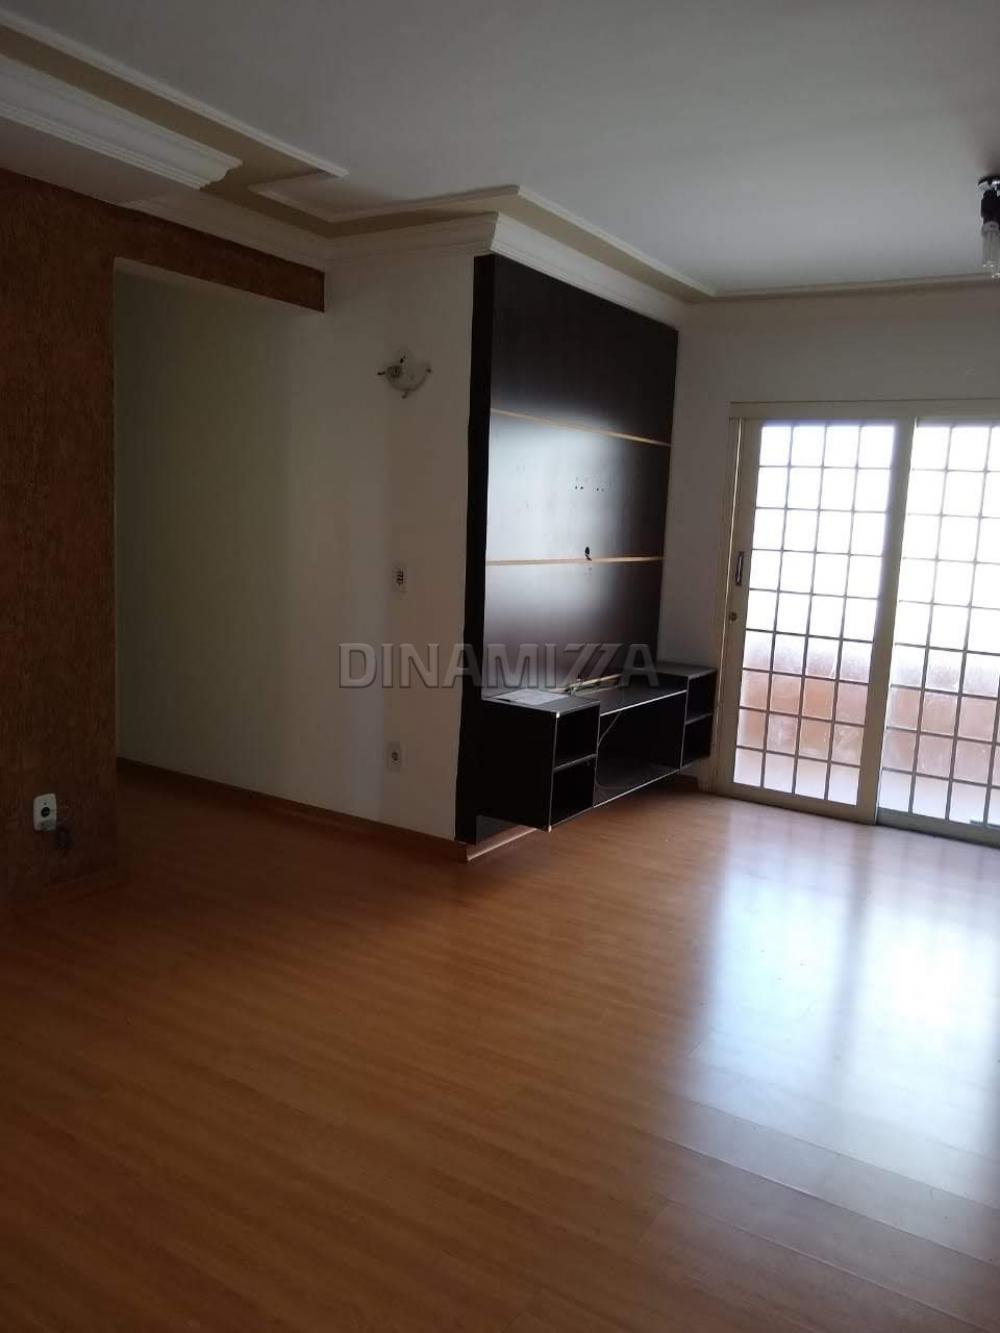 Comprar Apartamento / Padrão em Uberaba R$ 210.000,00 - Foto 2